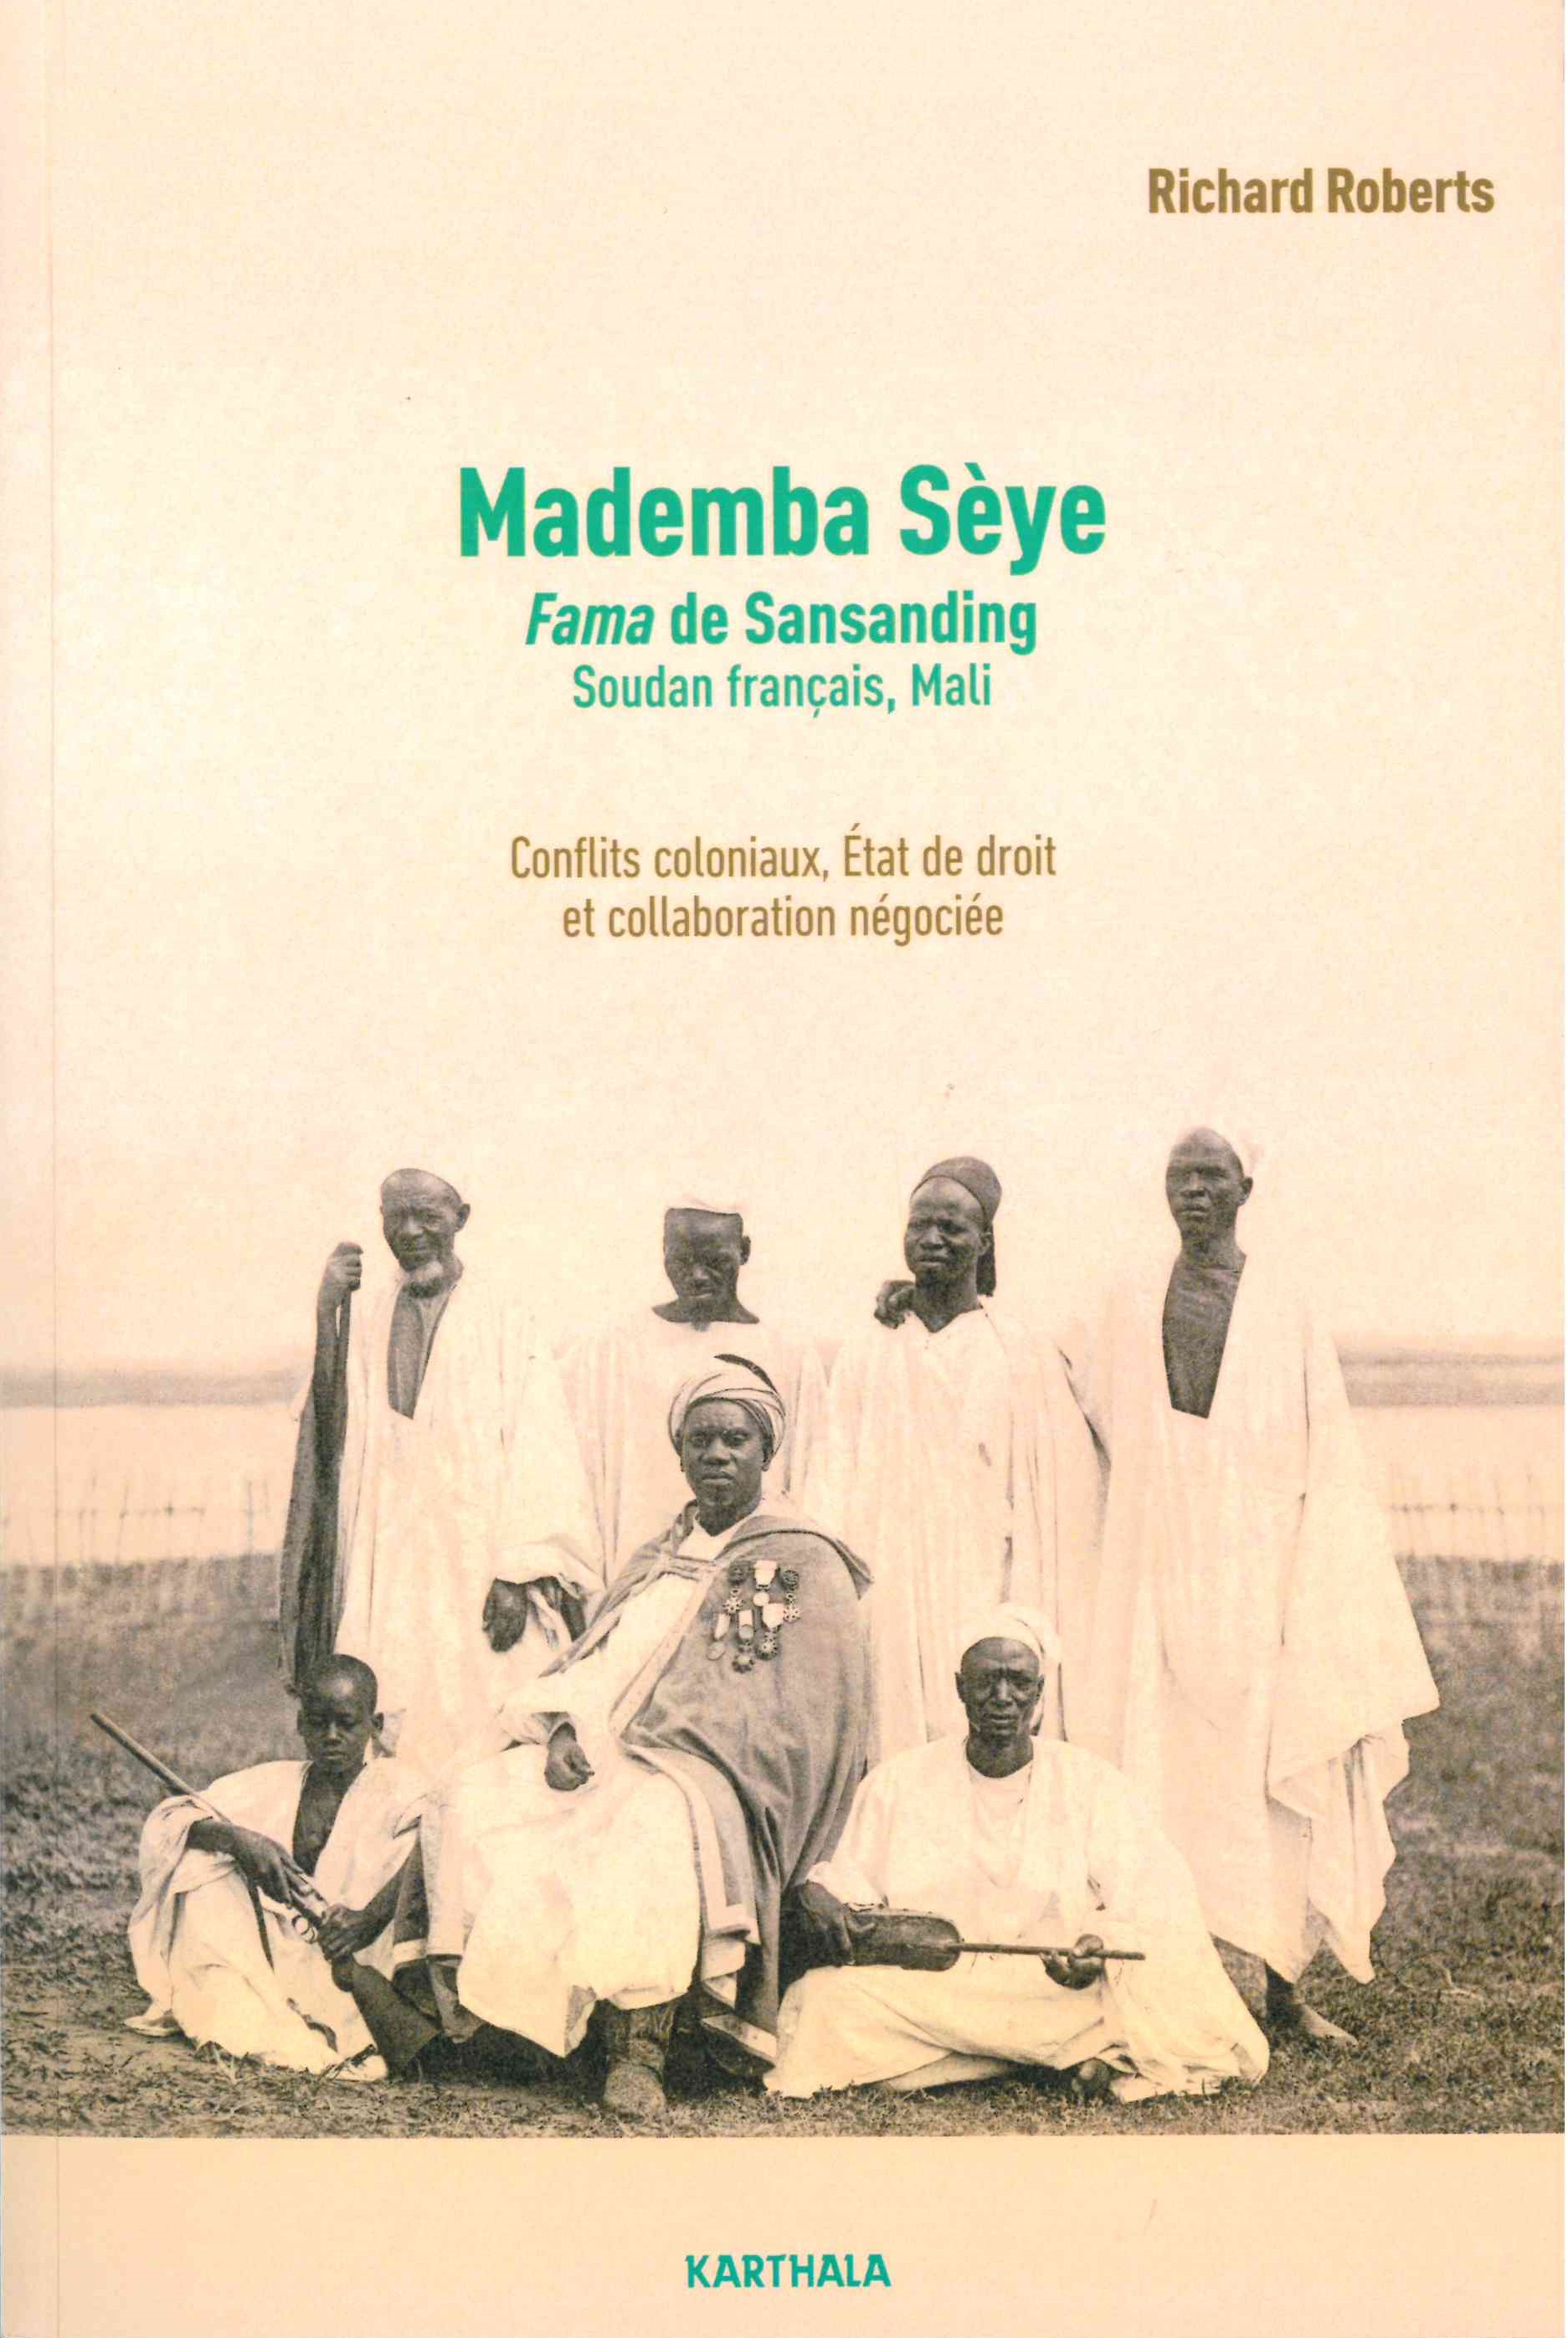 Roberts, Richard L., Mademba Sèye : Fama de Sandanding, Soudan français, Mali : conflits coloniaux, Etat de droit et collaboration négociée